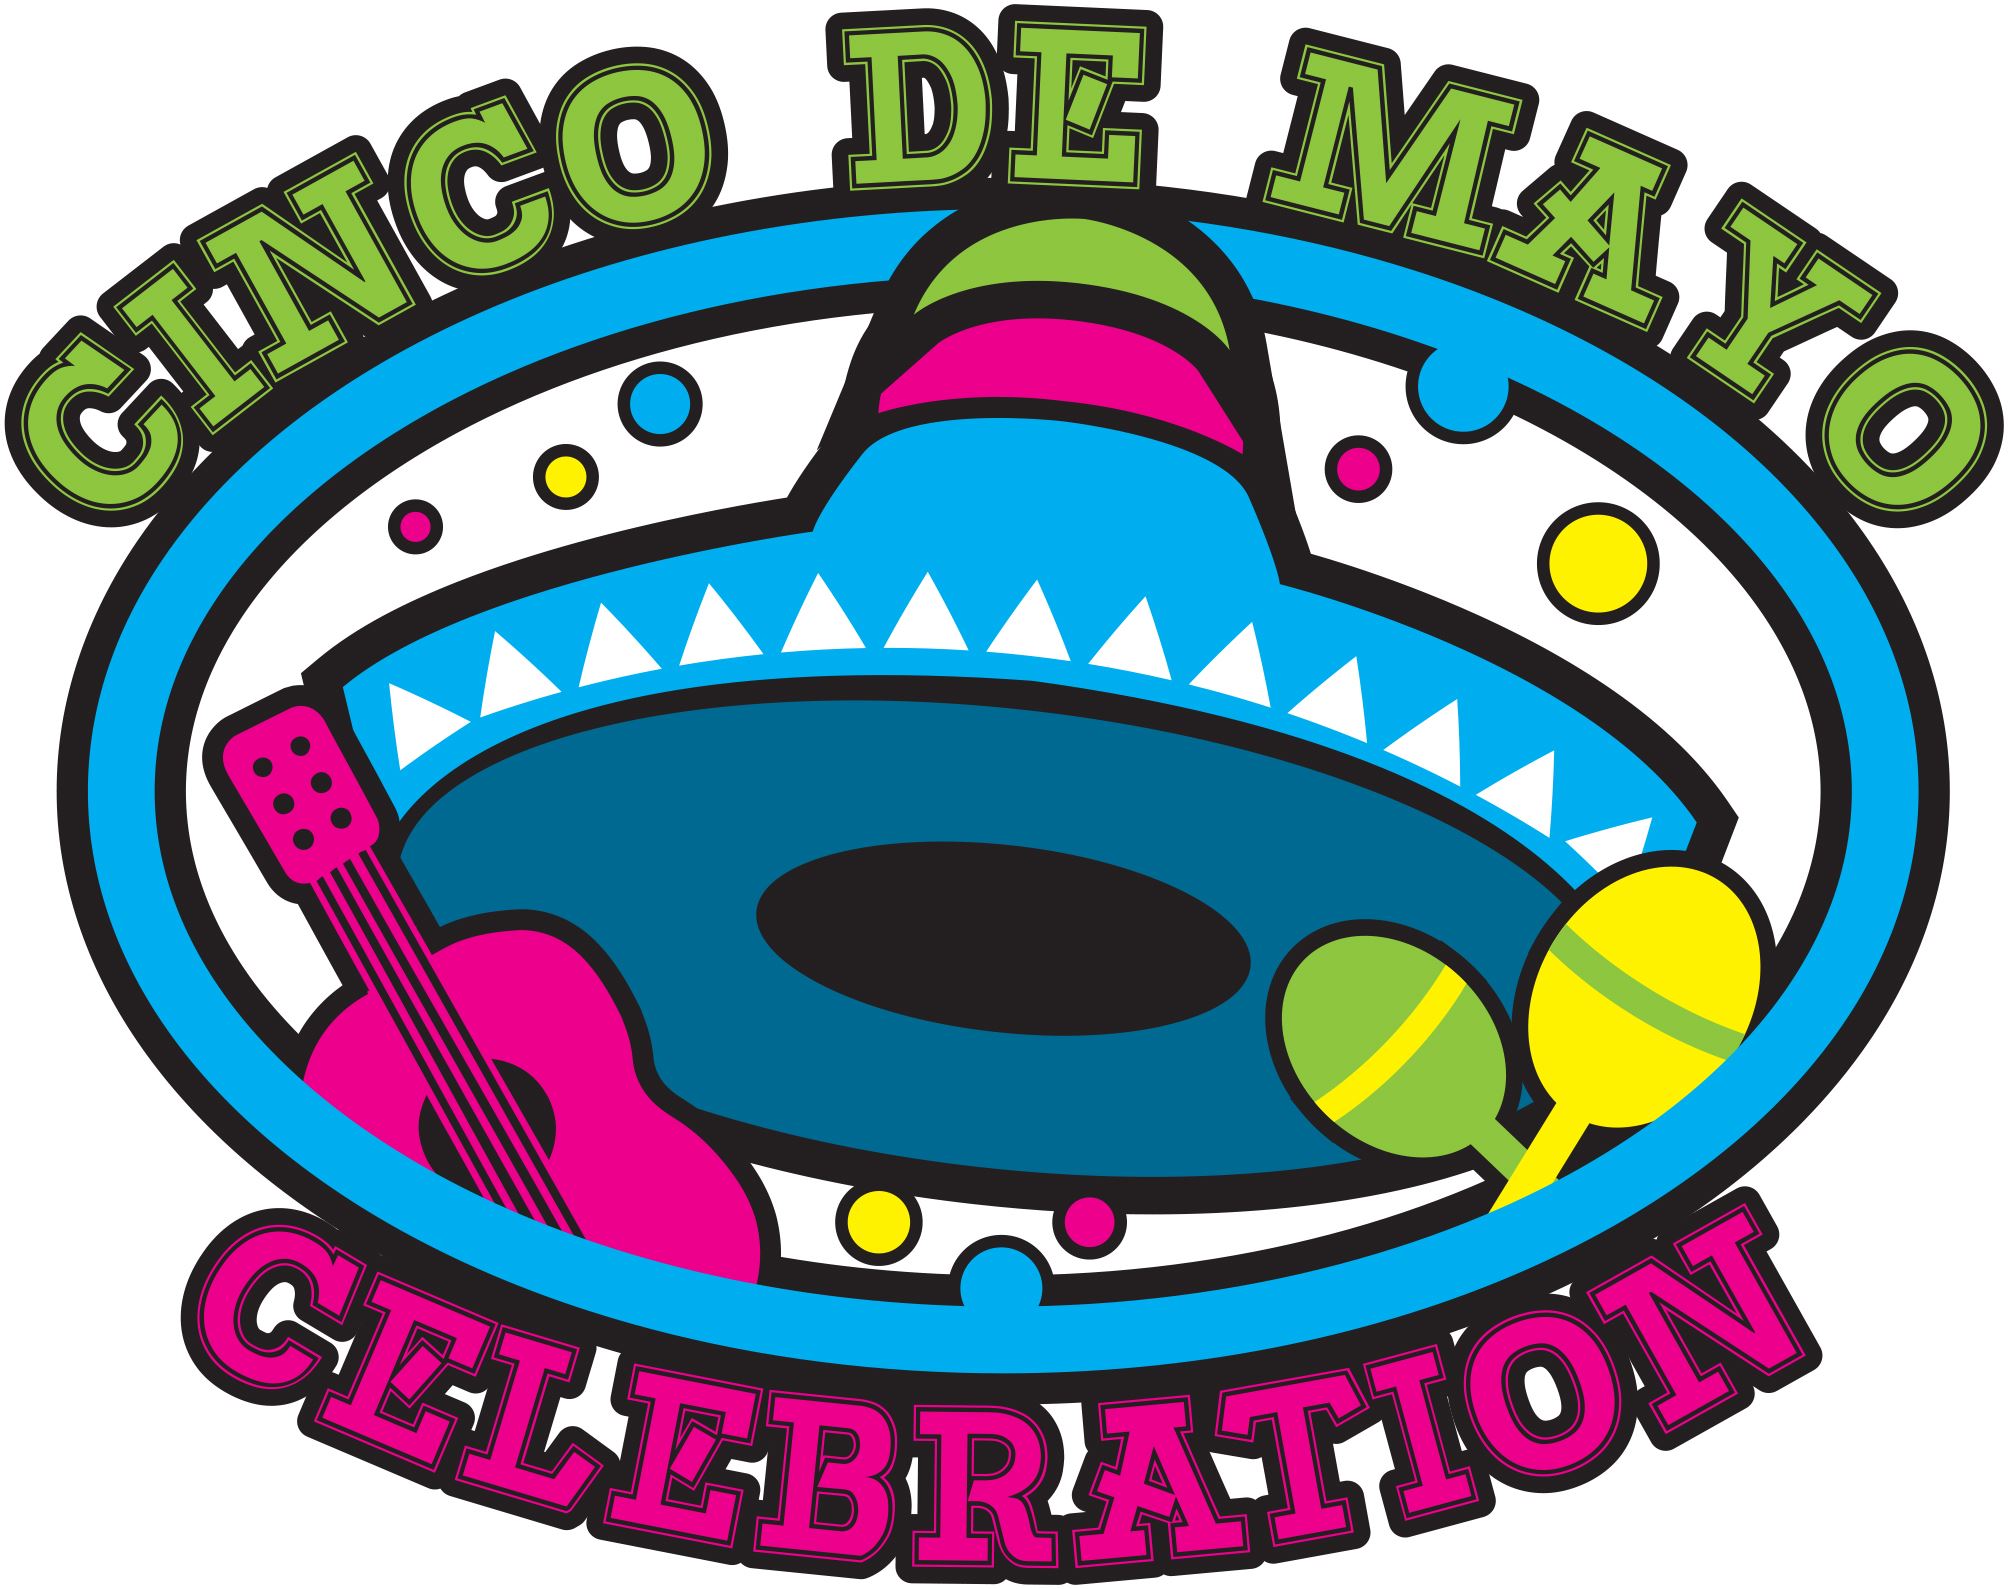 Cinco de Mayo Celebration - 2017 | Mesquite, TX - Official Website